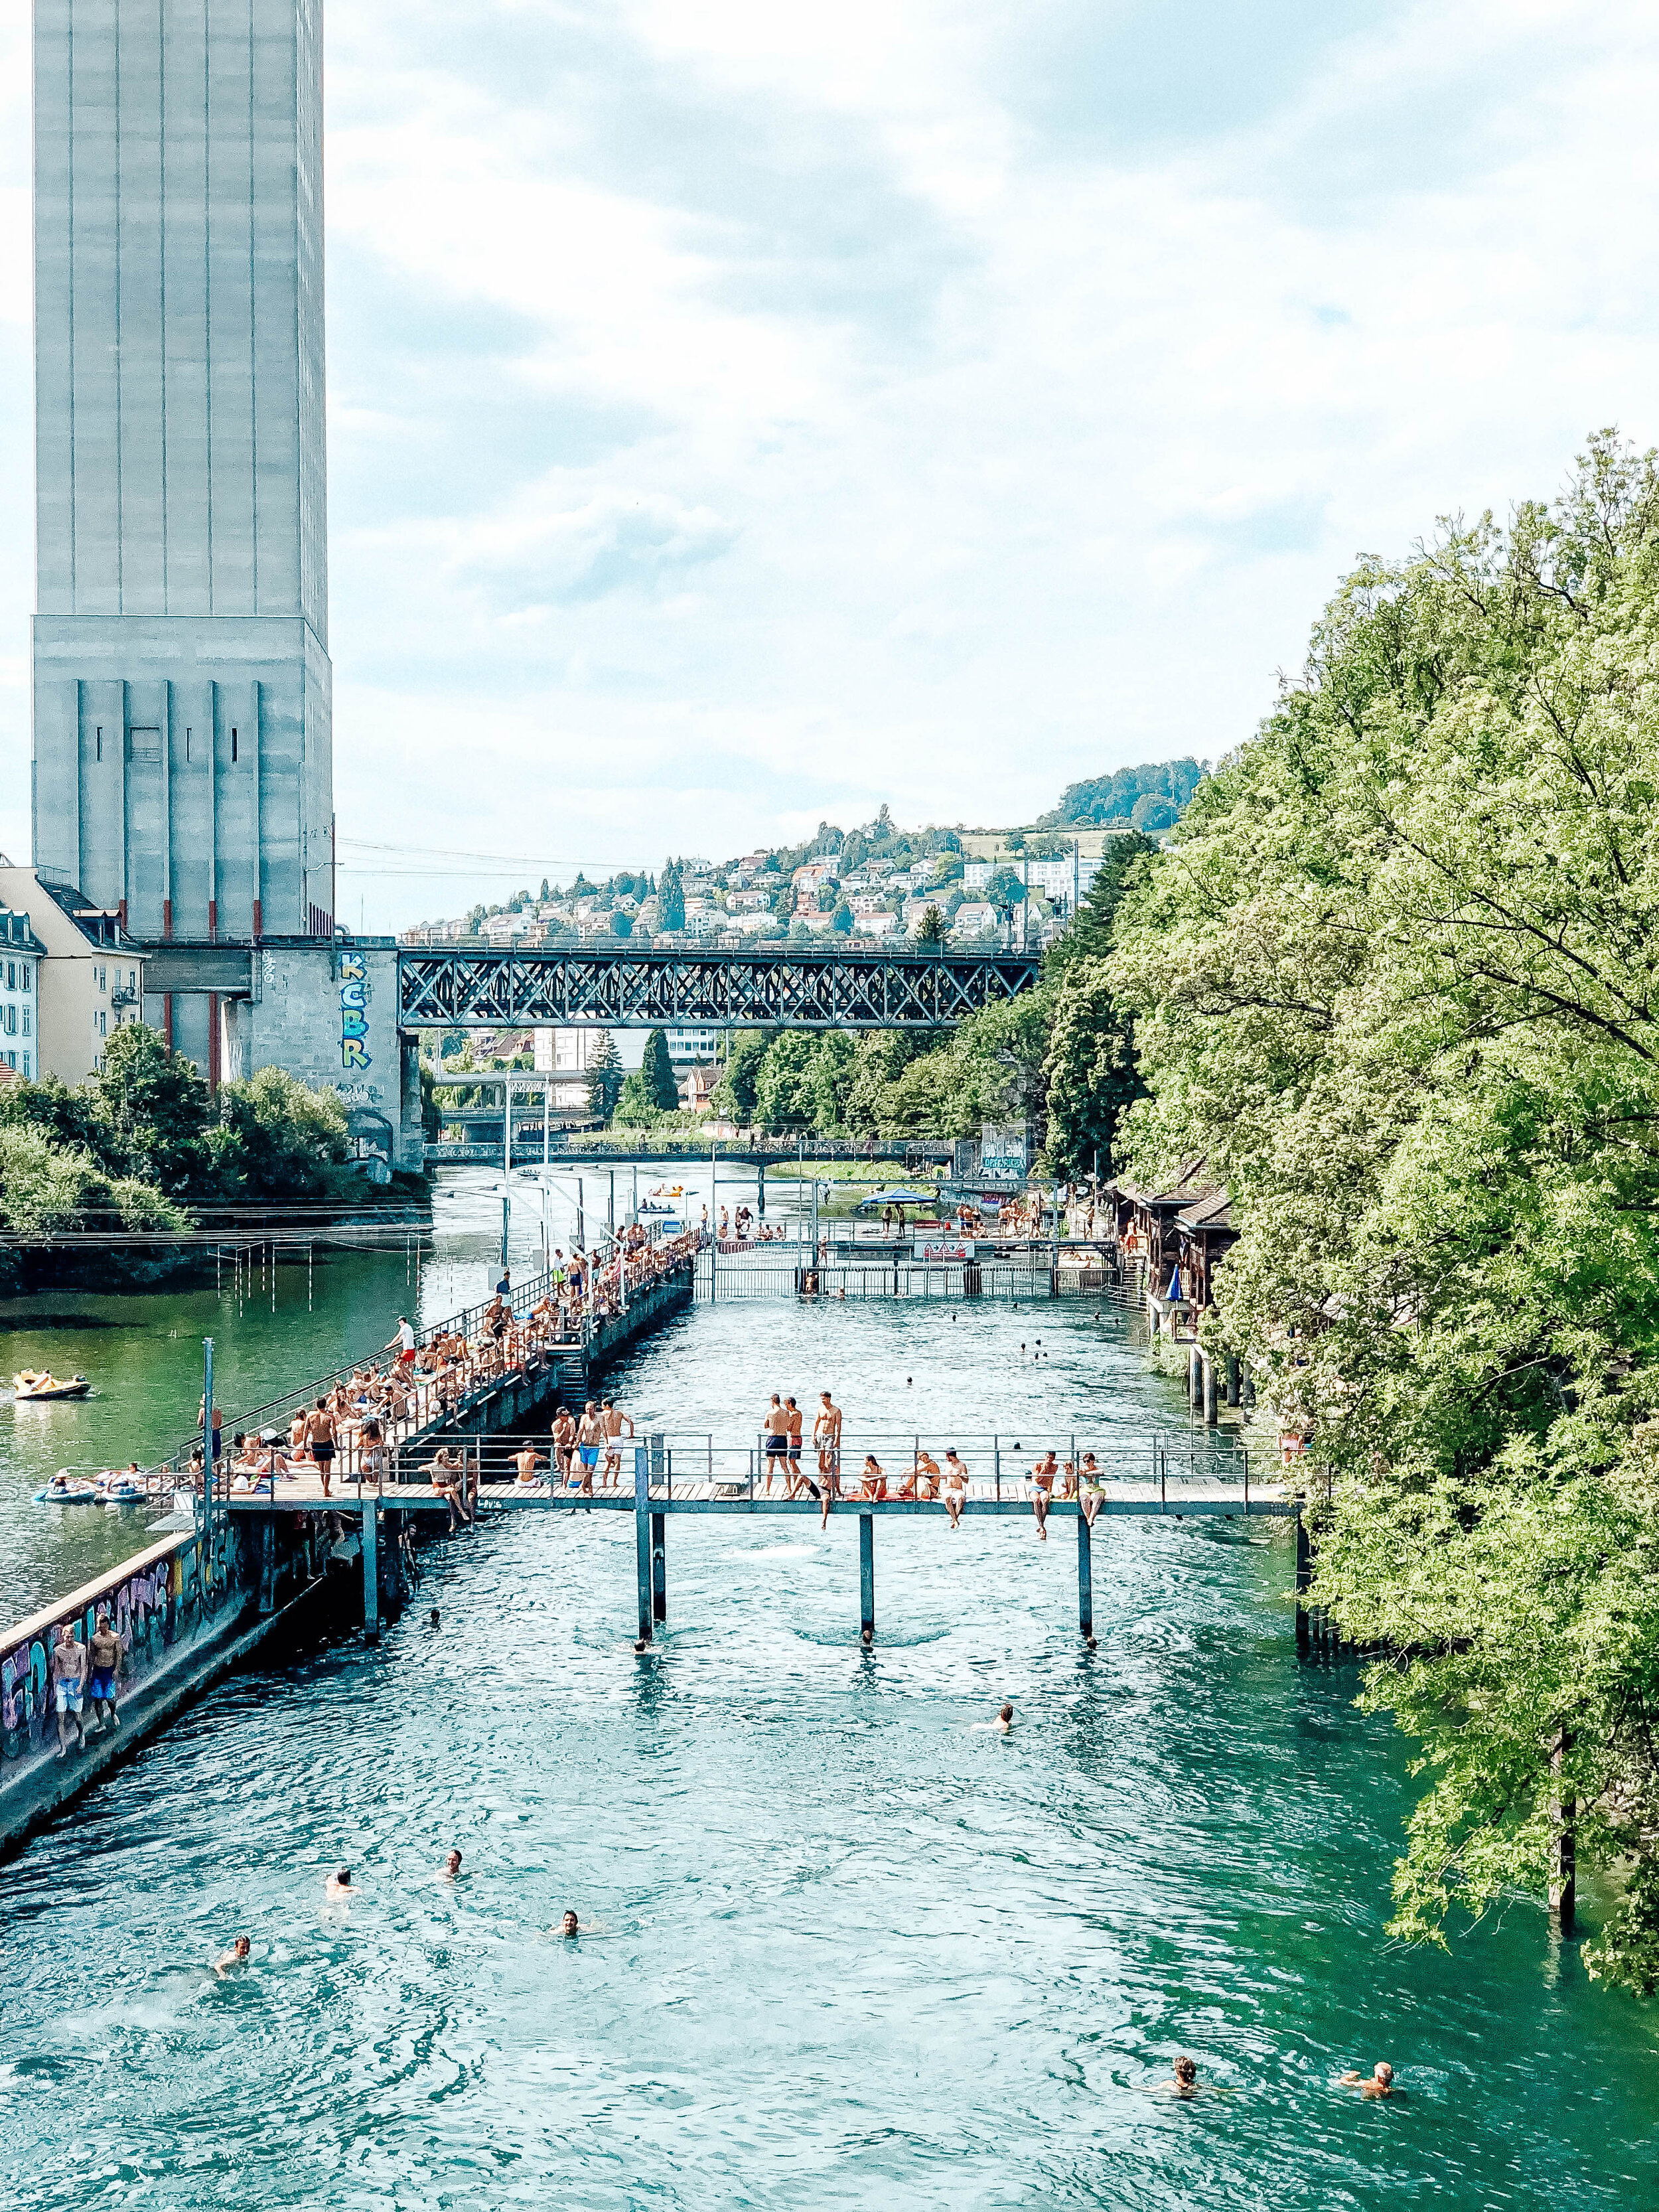 Swimming in the Limmat in Zurich, Switzerland